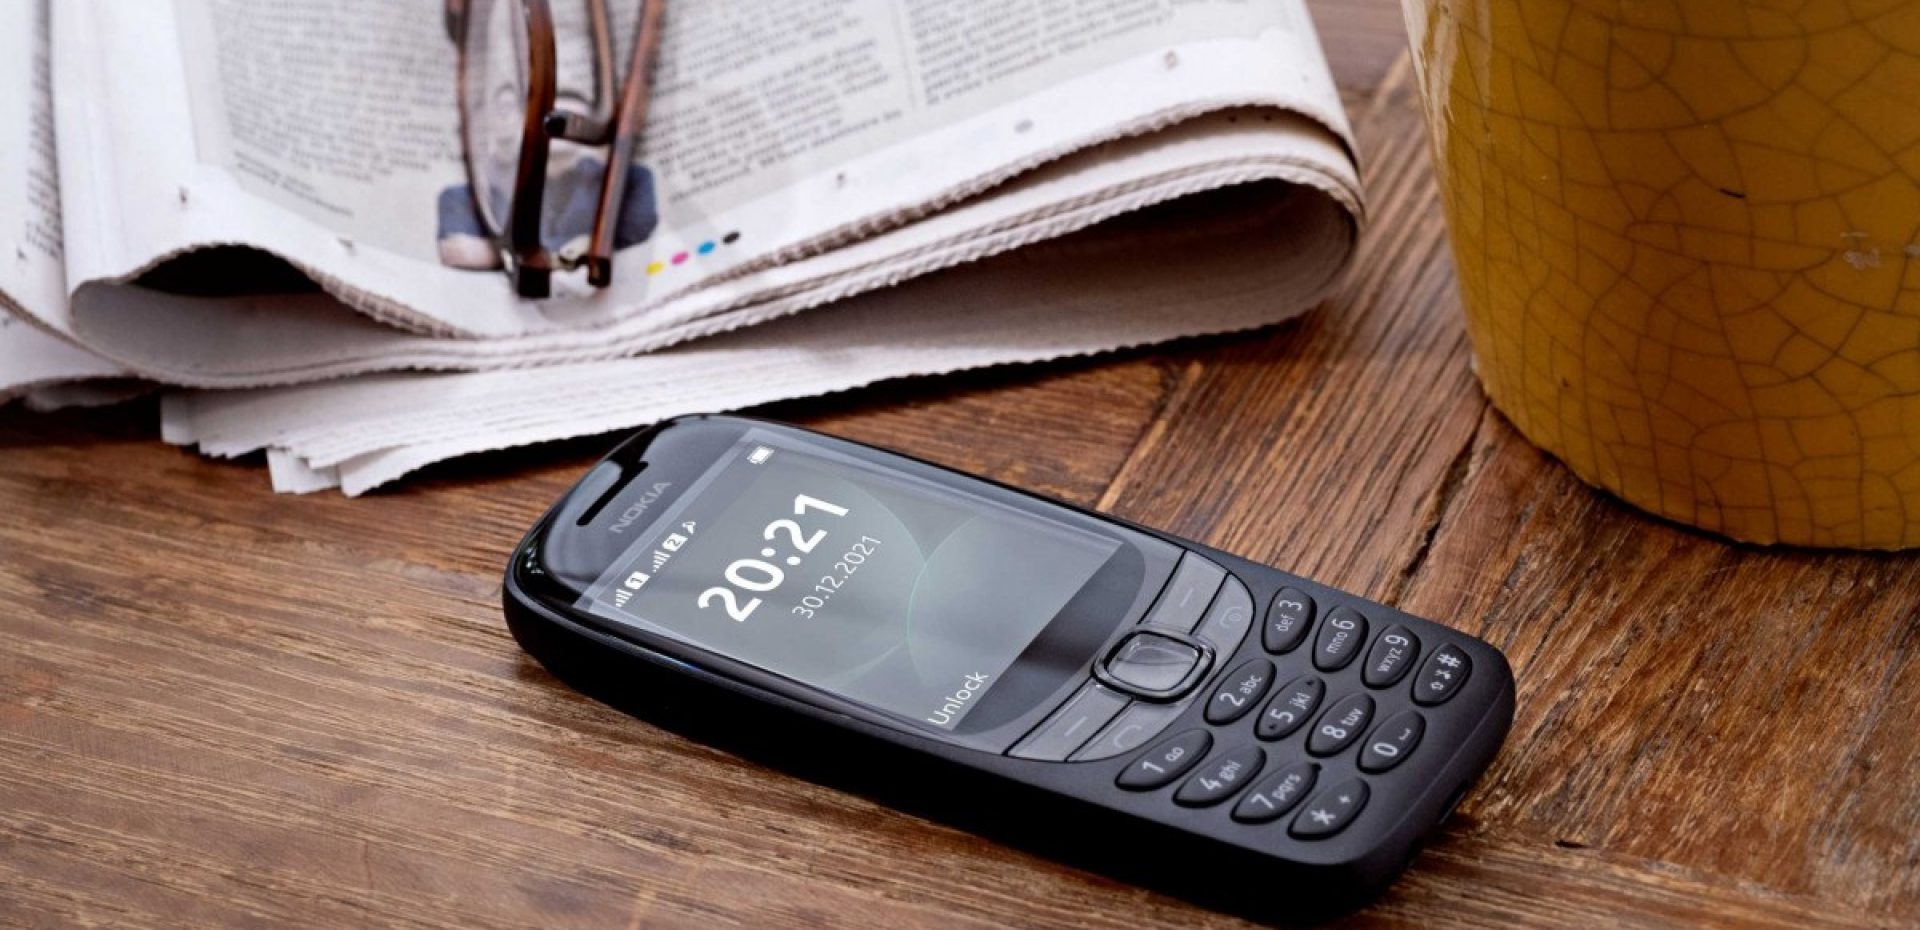 گوشی هوشمند اقتصادی نوکیا C30 در کنار نوکیا 6310 رونمایی شد - سخت افزار مگ